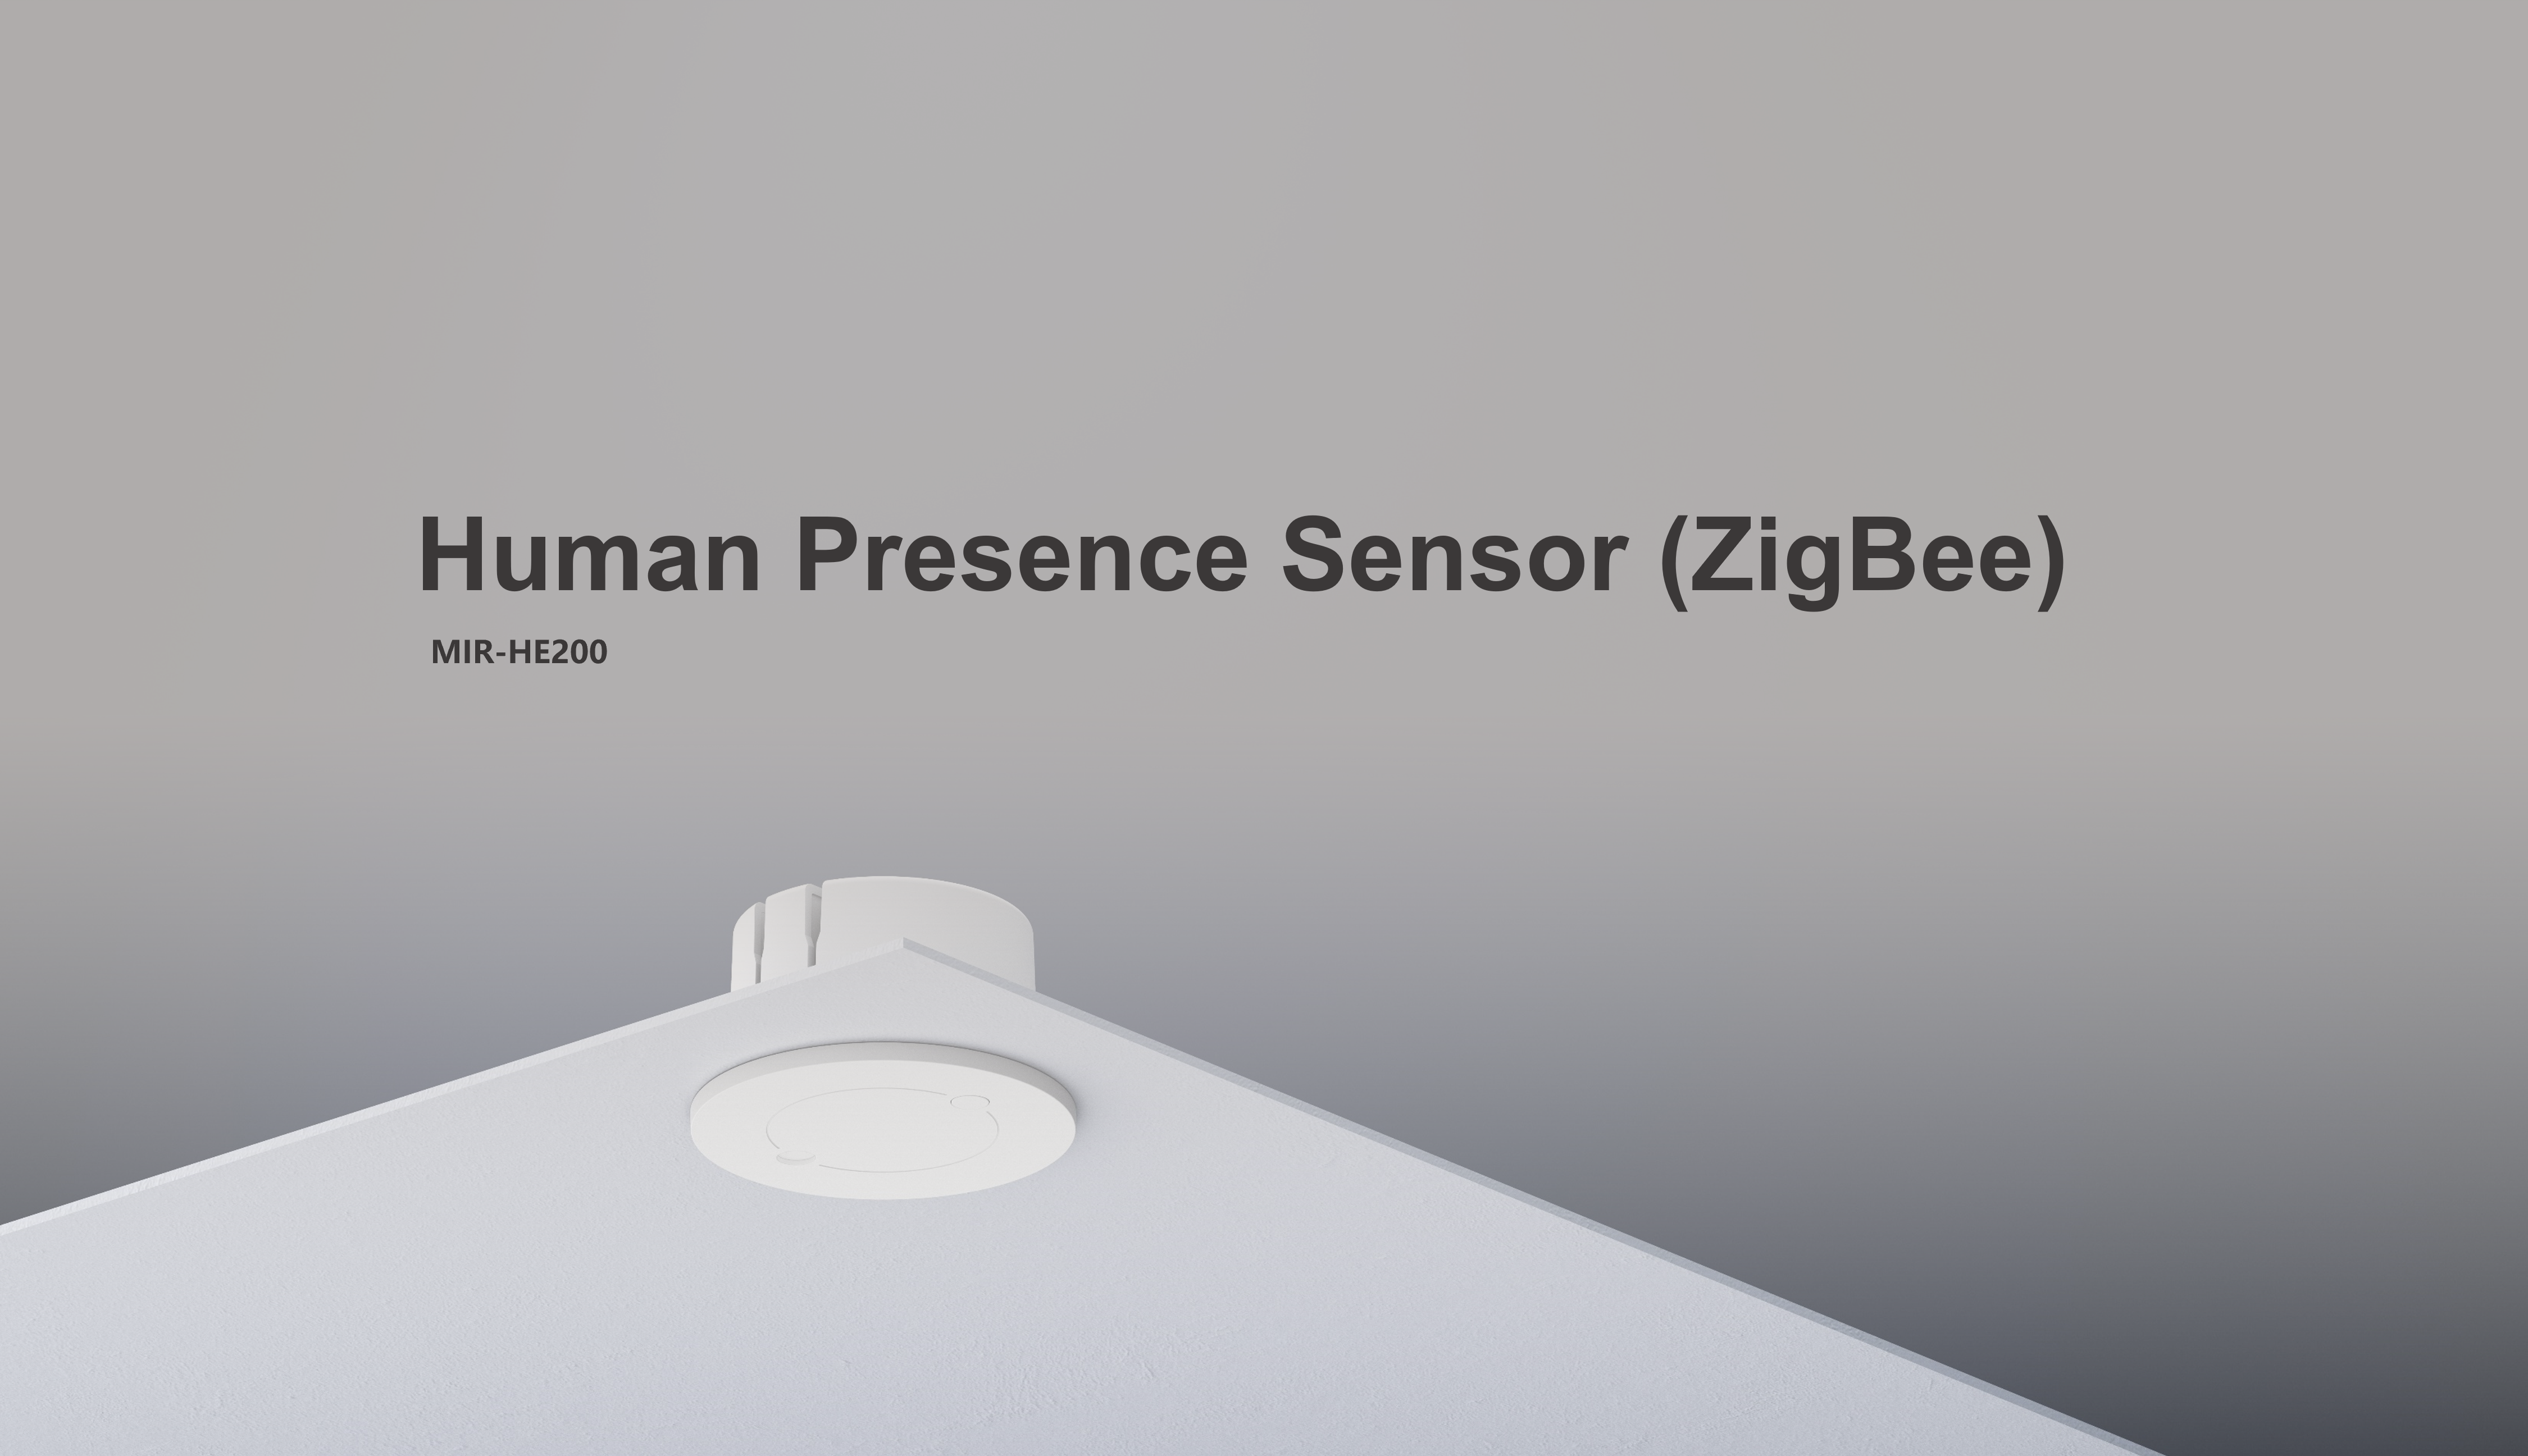 Human Presence Sensor (ZigBee)